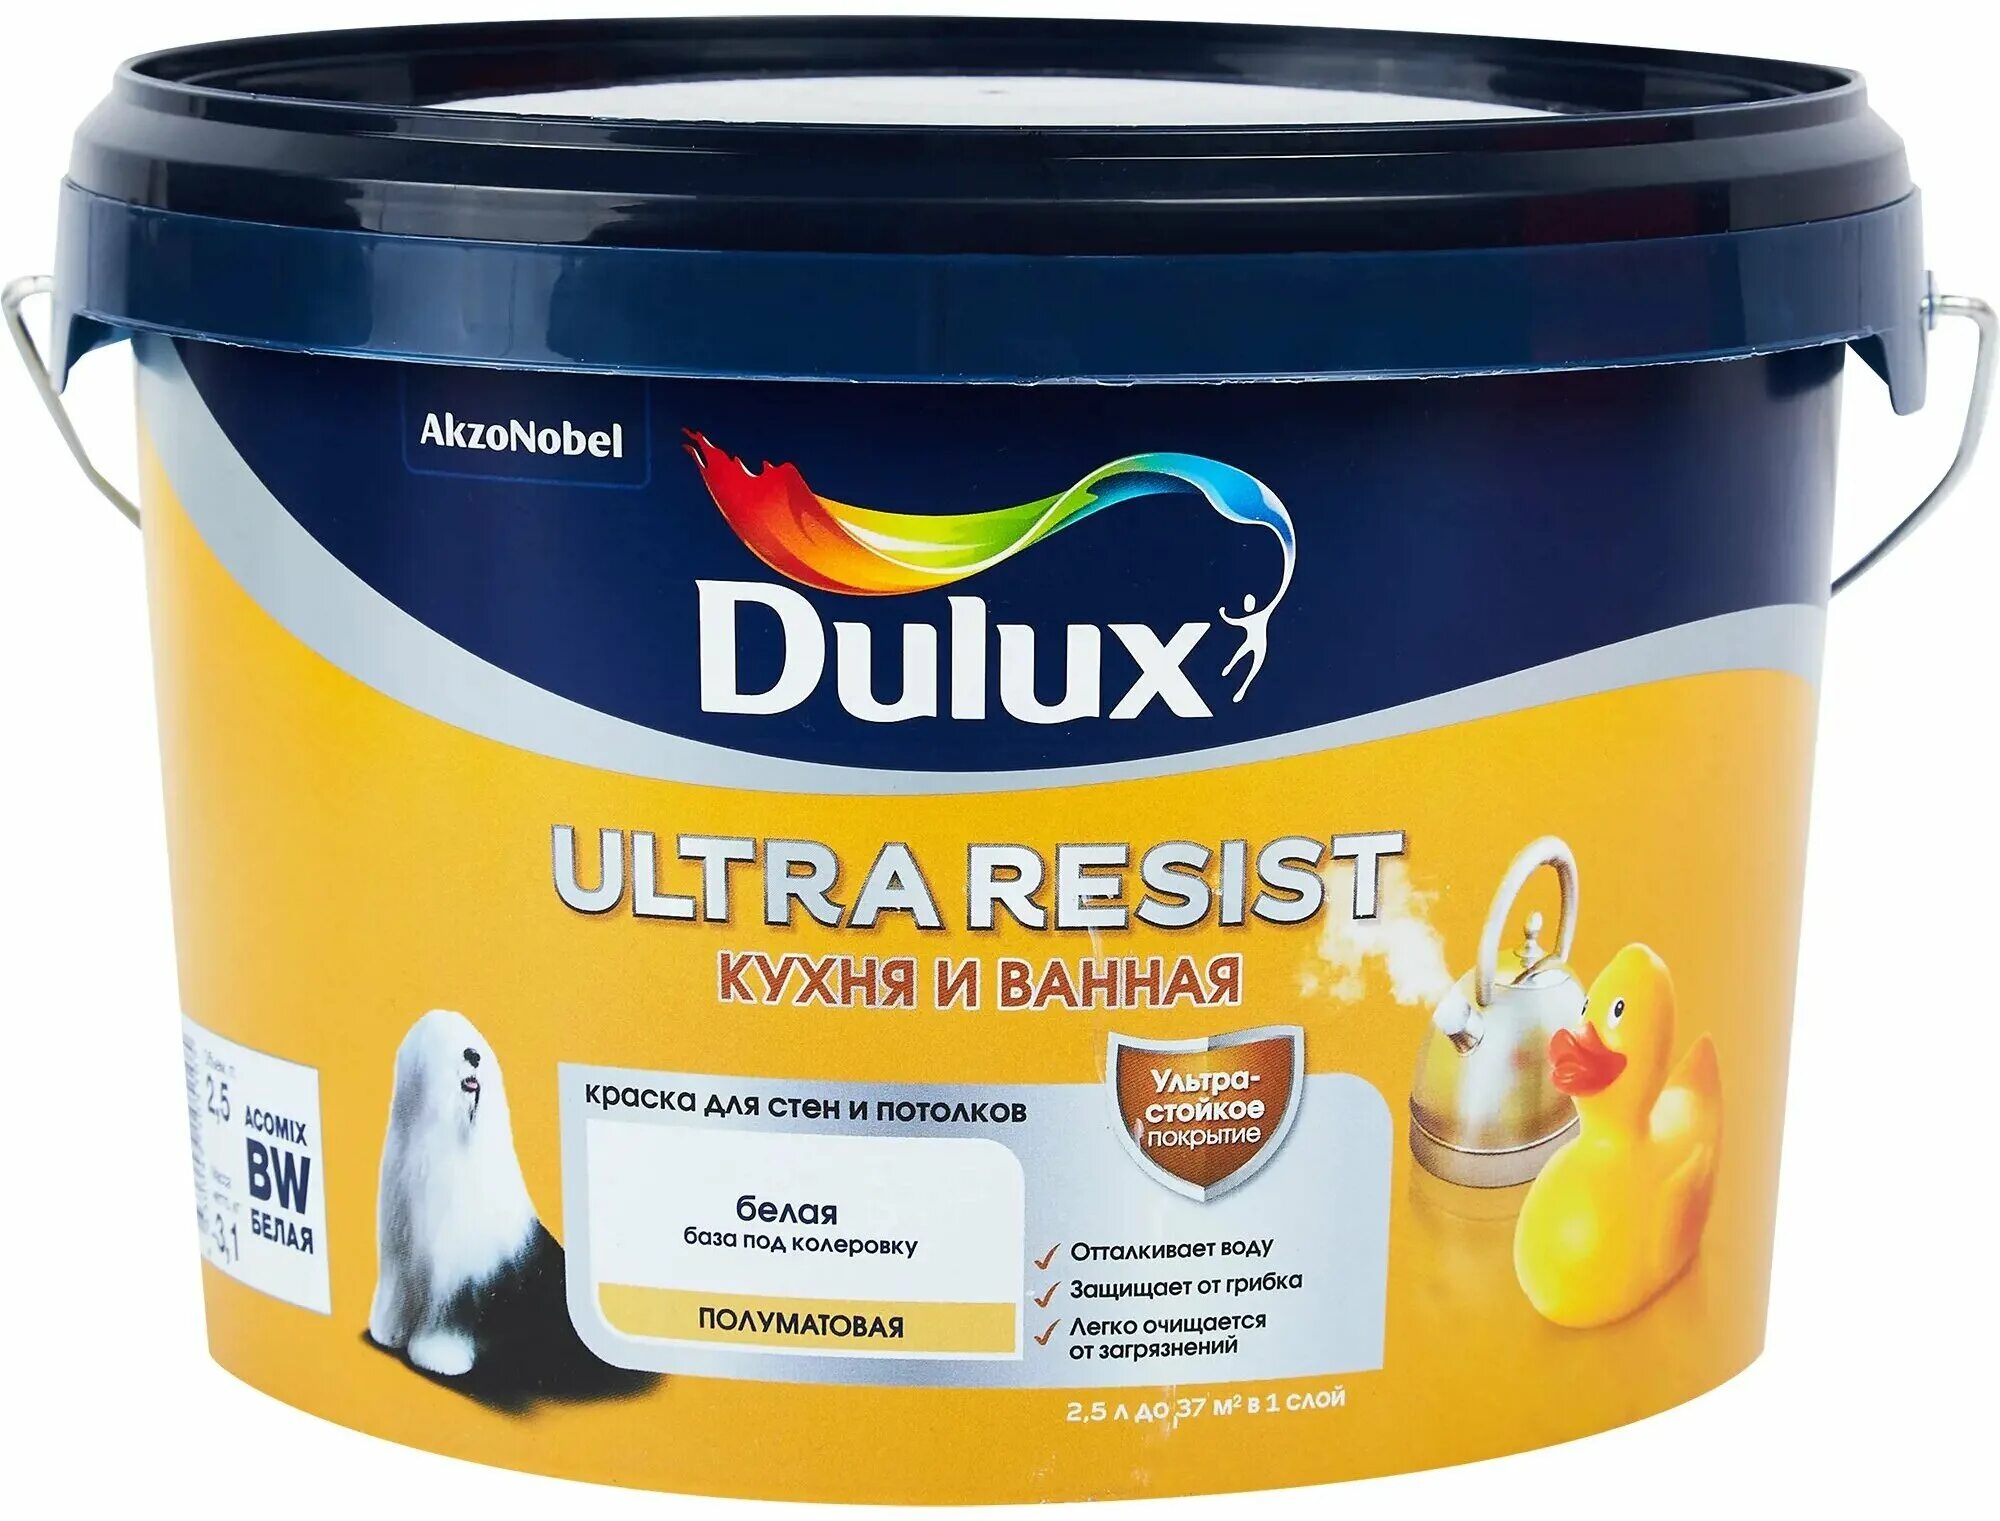 Ультра резист. Dulux Ultra resist ванная. Dulux Ultra resist кухня и ванная. Dulux Ultra resist палитра. Краска для стен на кухне.